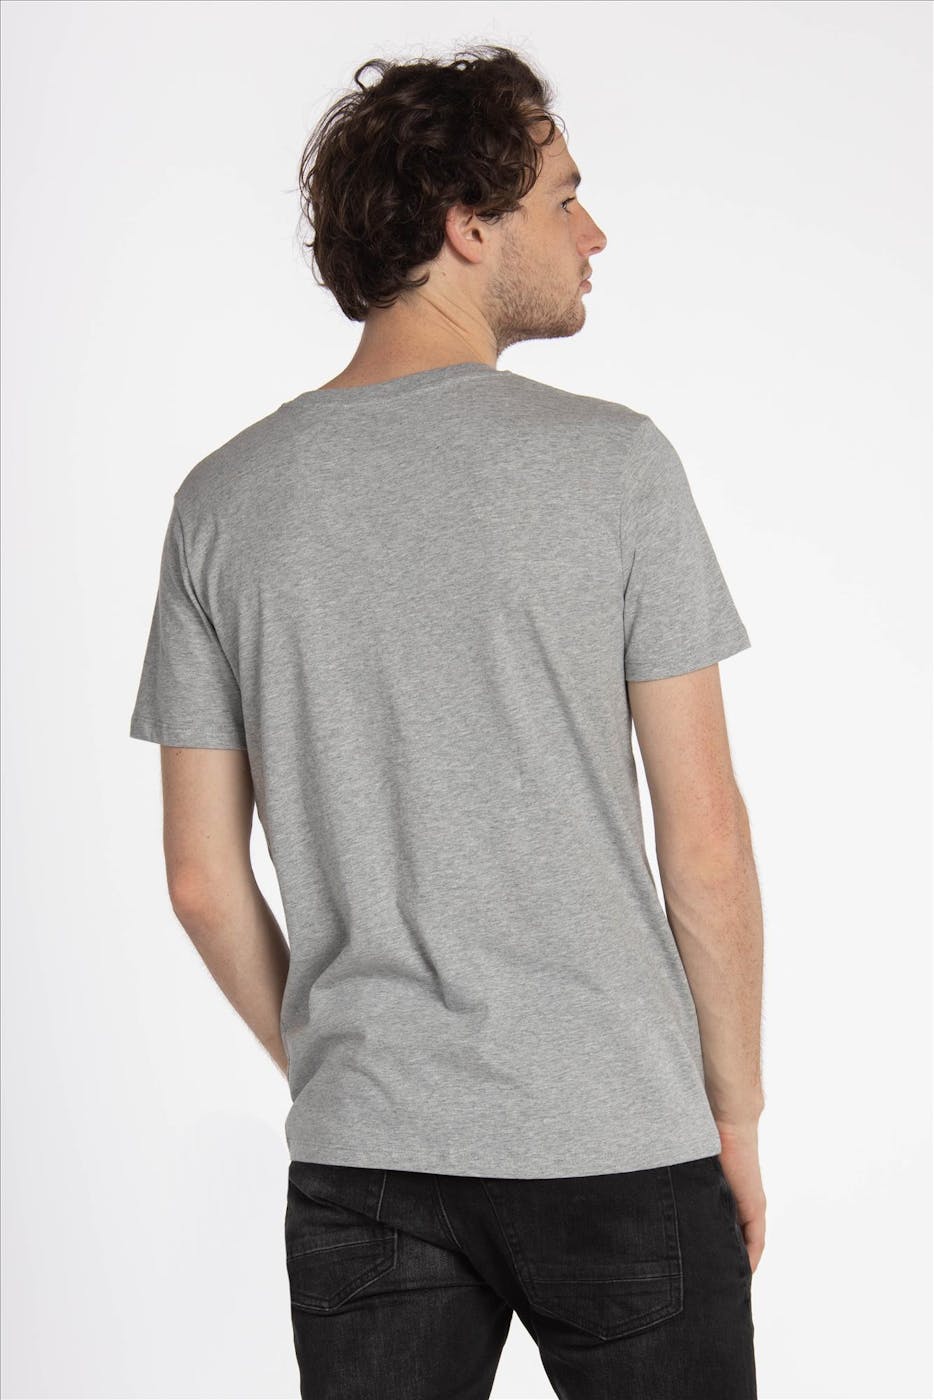 Brooklyn - Intwiel Grijze Bidon T-shirt